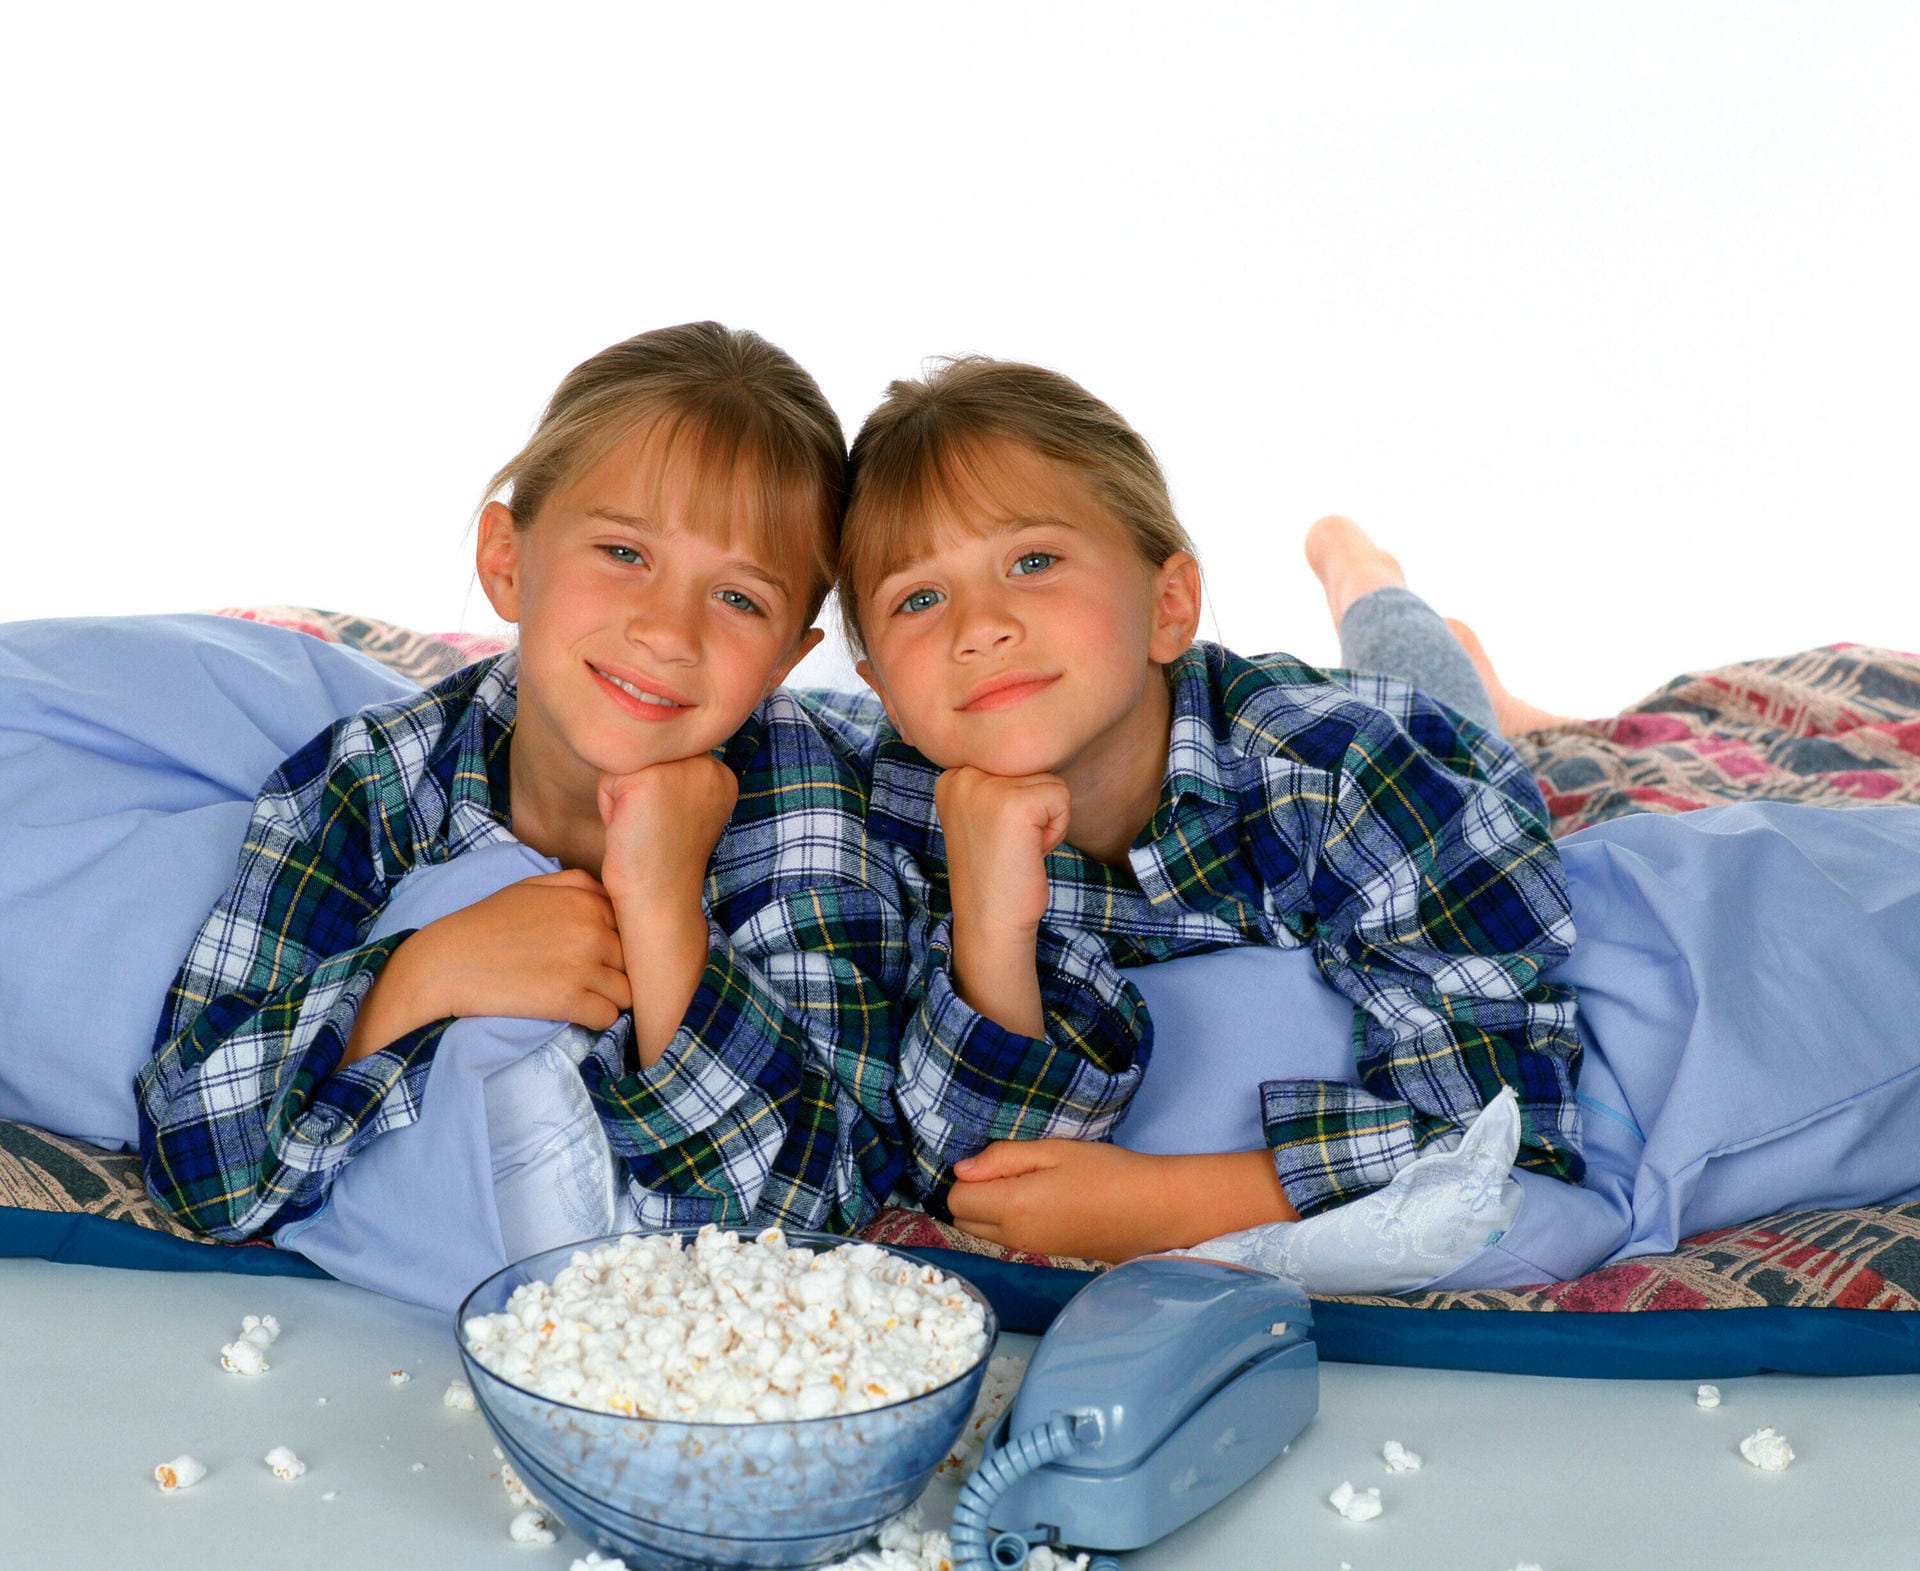 Nach dem Ende der Serie starteten die Olsen-Zwillinge erst so richtig durch und spielten in zahlreichen Serien und Filmen mit. Hier sind sie in der Serie "You're Invited to Mary-Kate & Ashley's Sleepover Party" zu sehen, die zwischen 1995 und 2000 gedreht wurde.